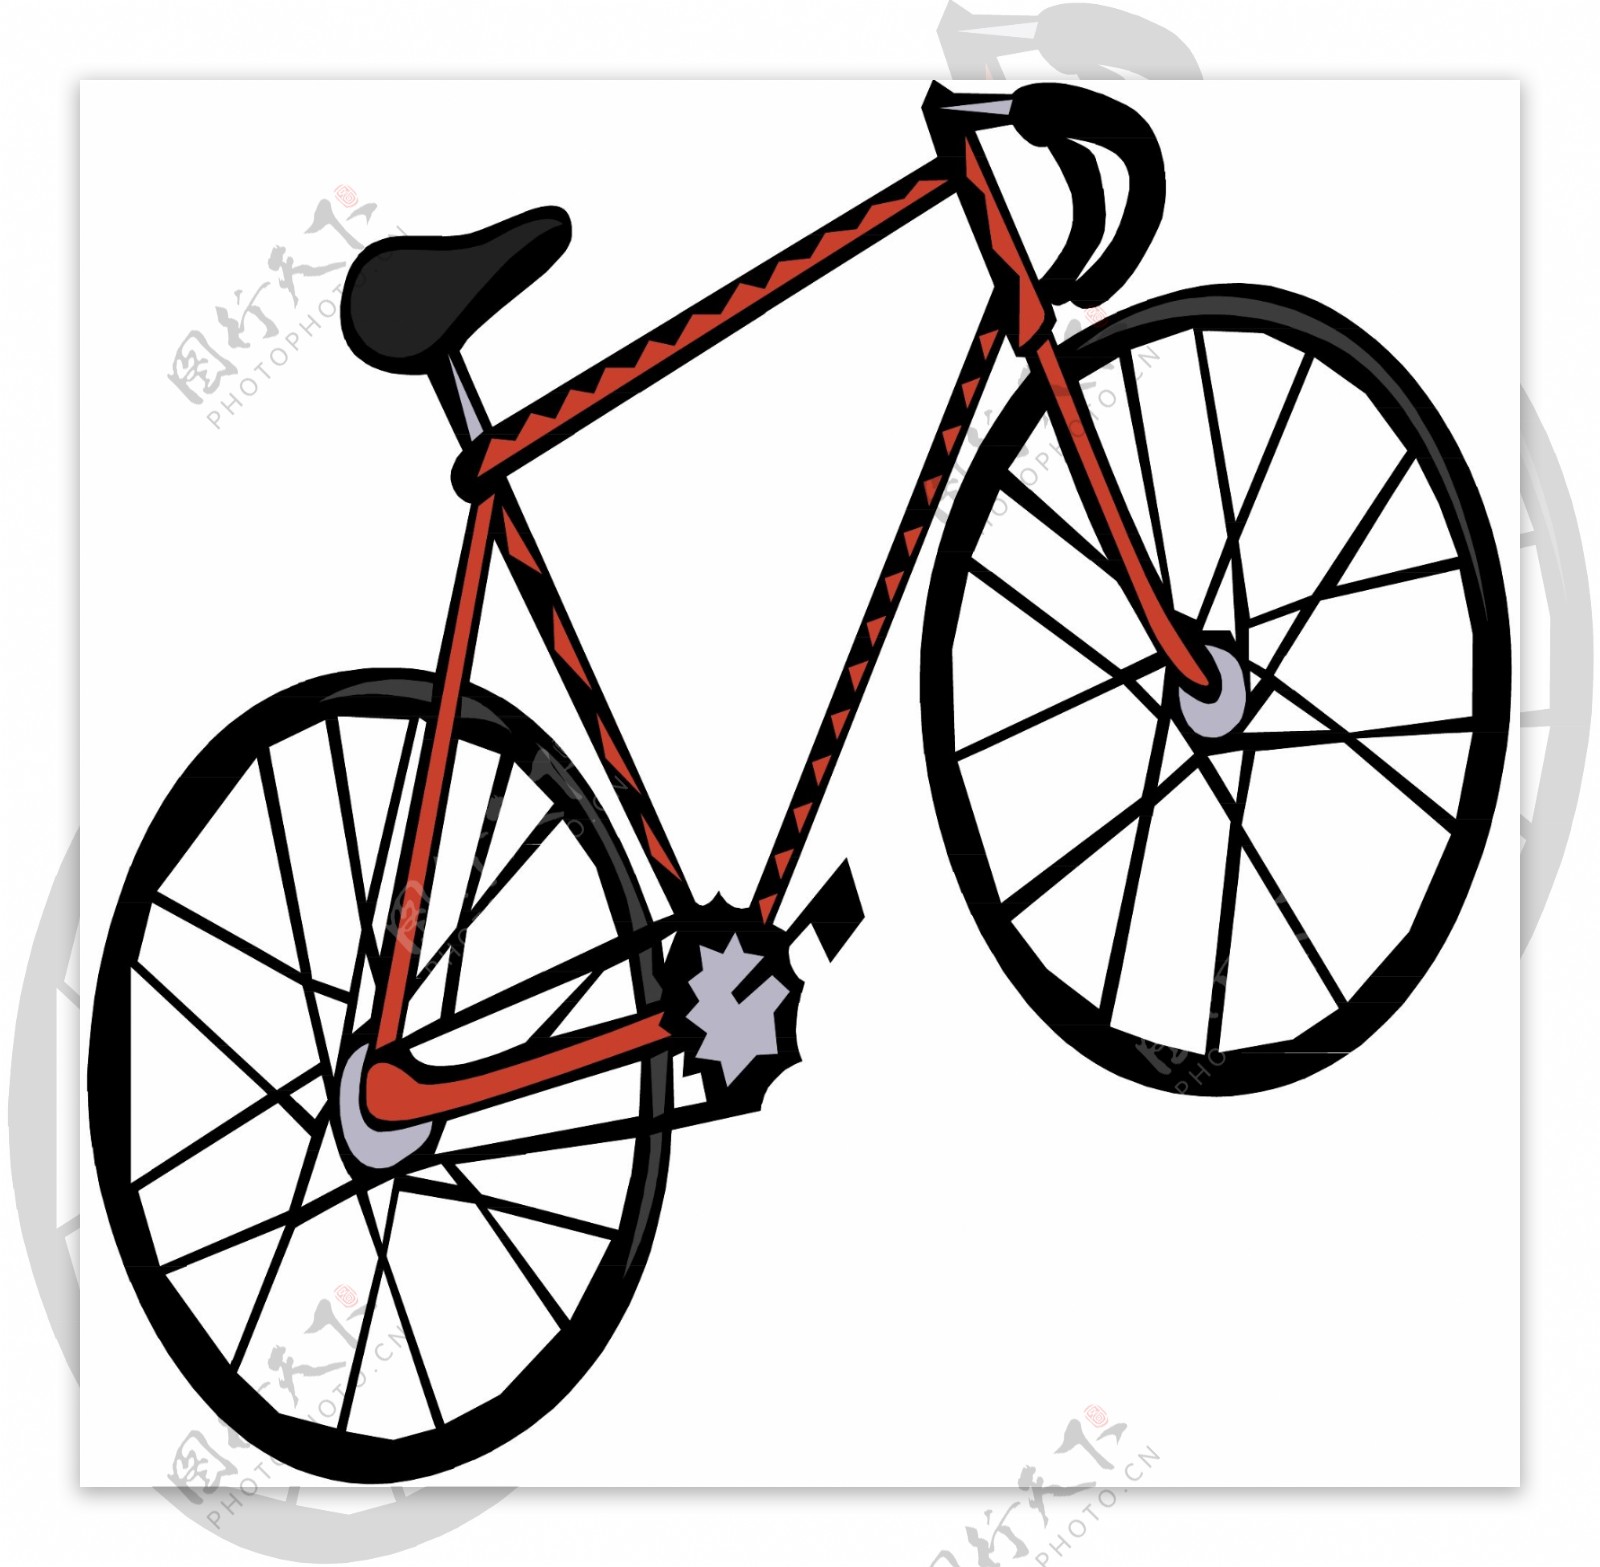 自行车交通工具矢量素材EPS格式0048